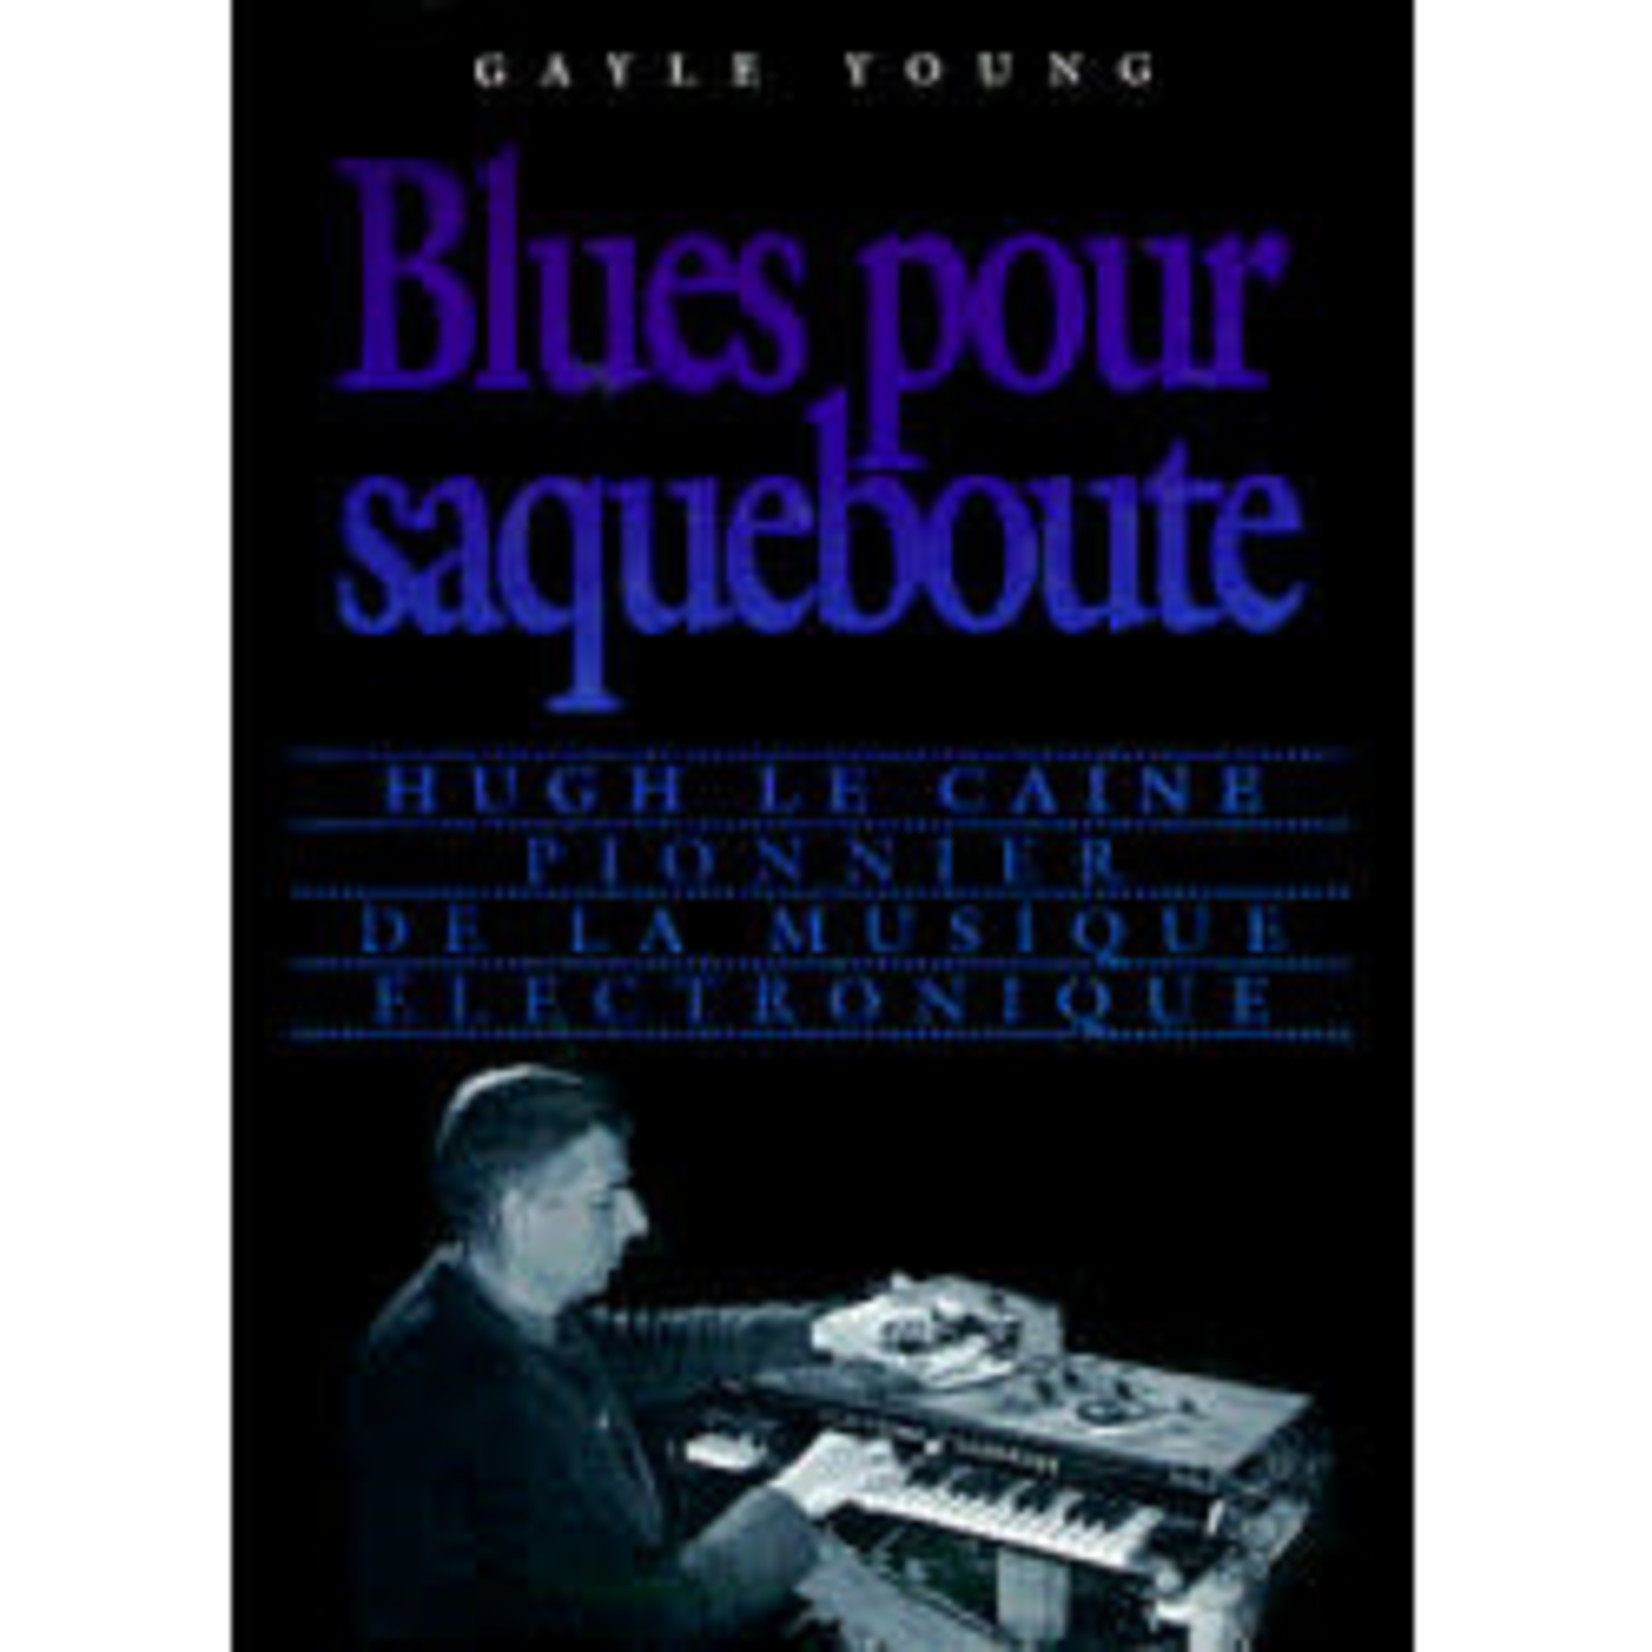 Science and Technology Blues pour saqueboute: Hugh Le Caine, pionnier de la musique electronique